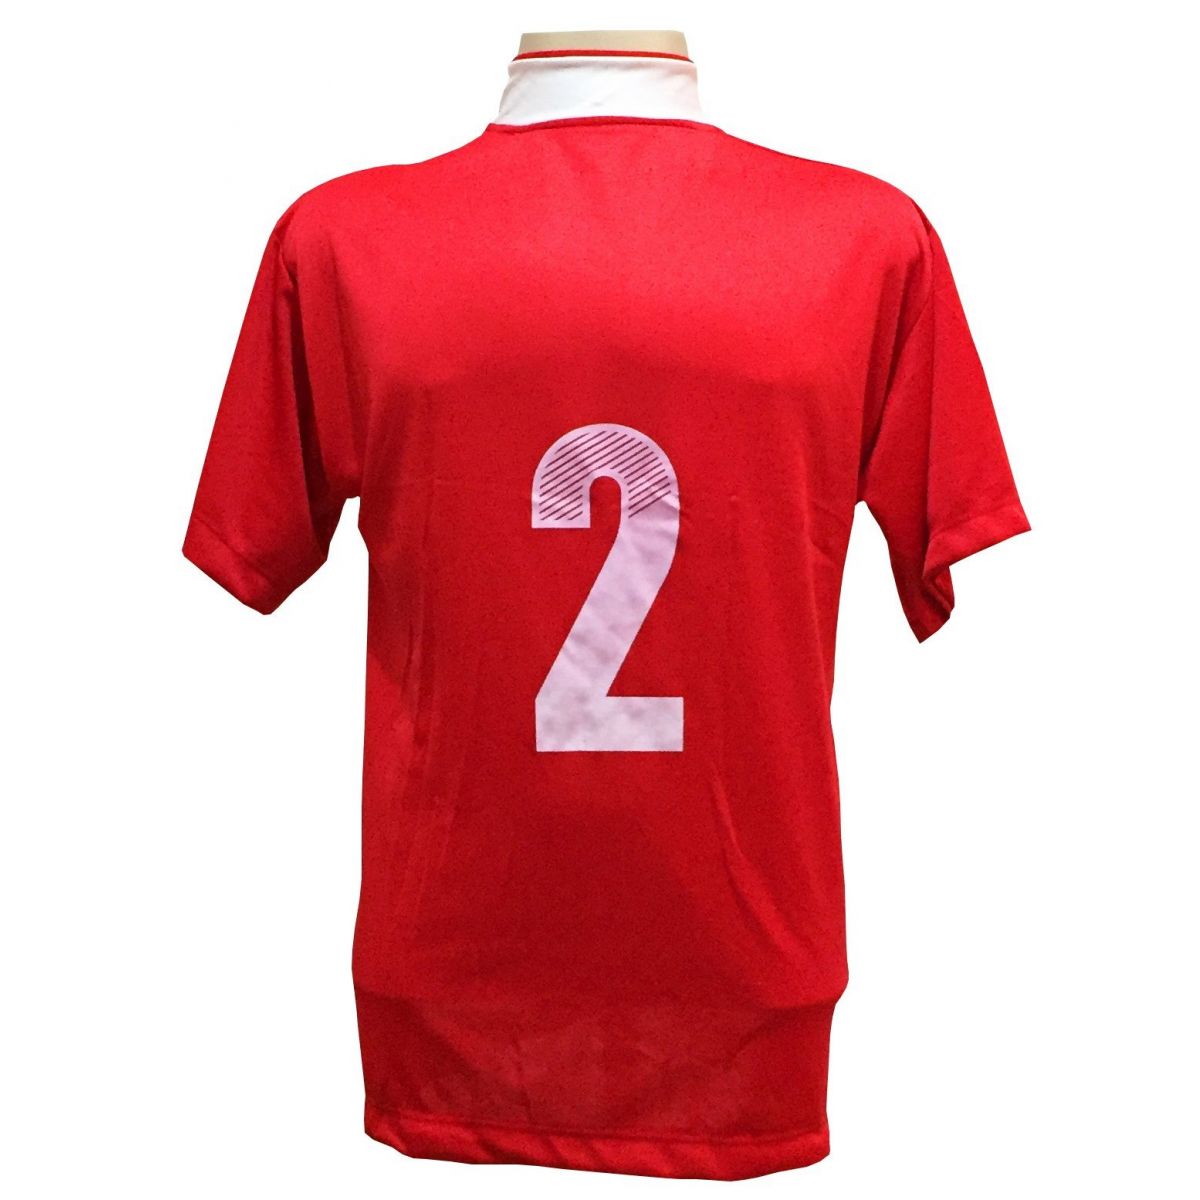 Uniforme Esportivo Completo modelo Suécia 14+1 (14 camisas Vermelho/Branco + 14 calções Madrid Vermelho + 14 pares de meiões Vermelhos + 1 conjunto de goleiro) + Brindes